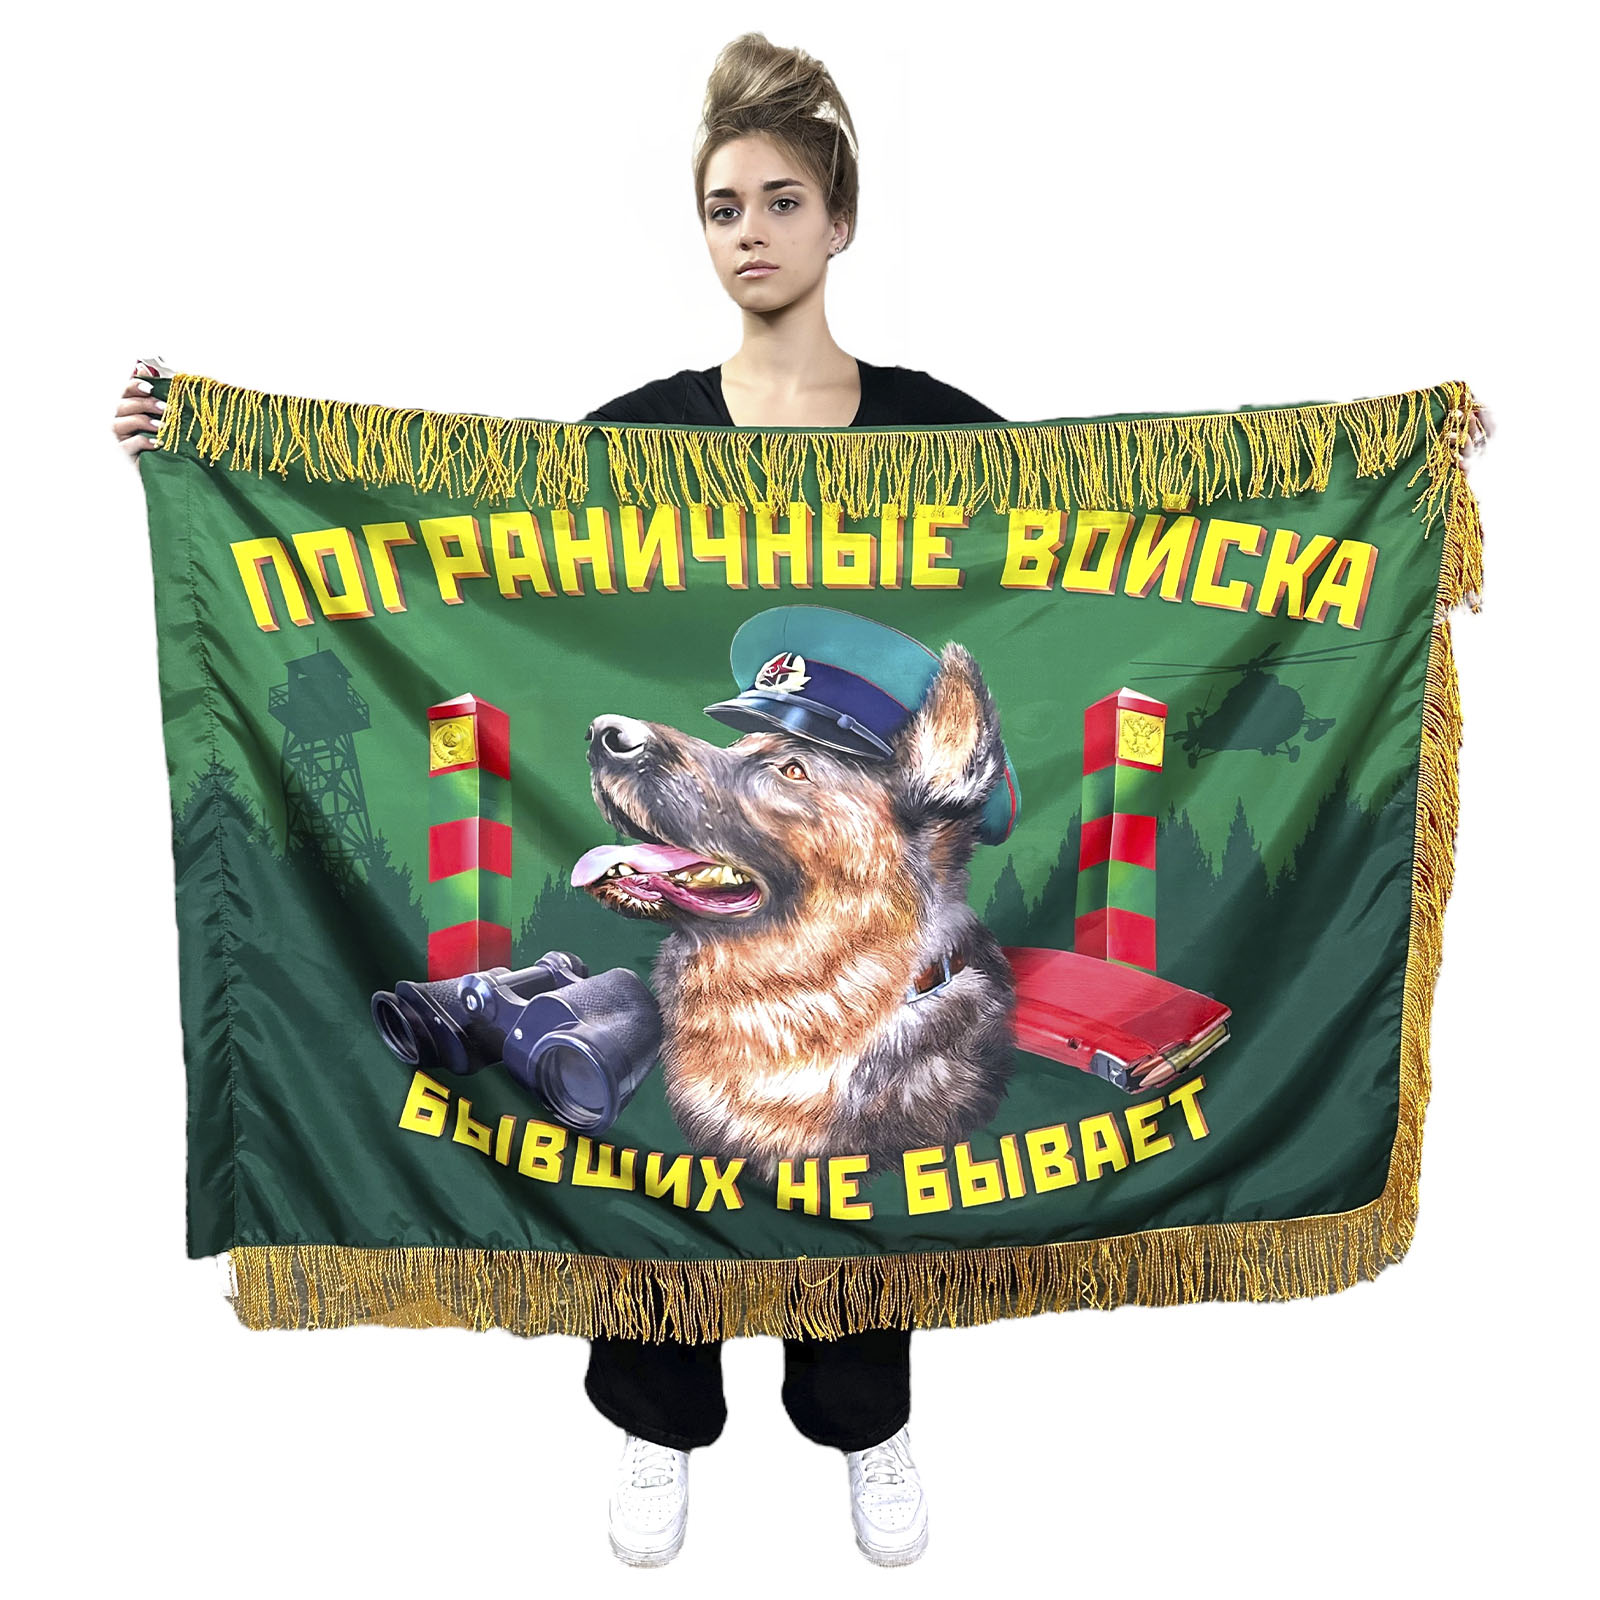 Двухсторонний флаг Пограничный войск "Бывших не бывает" с бахромой